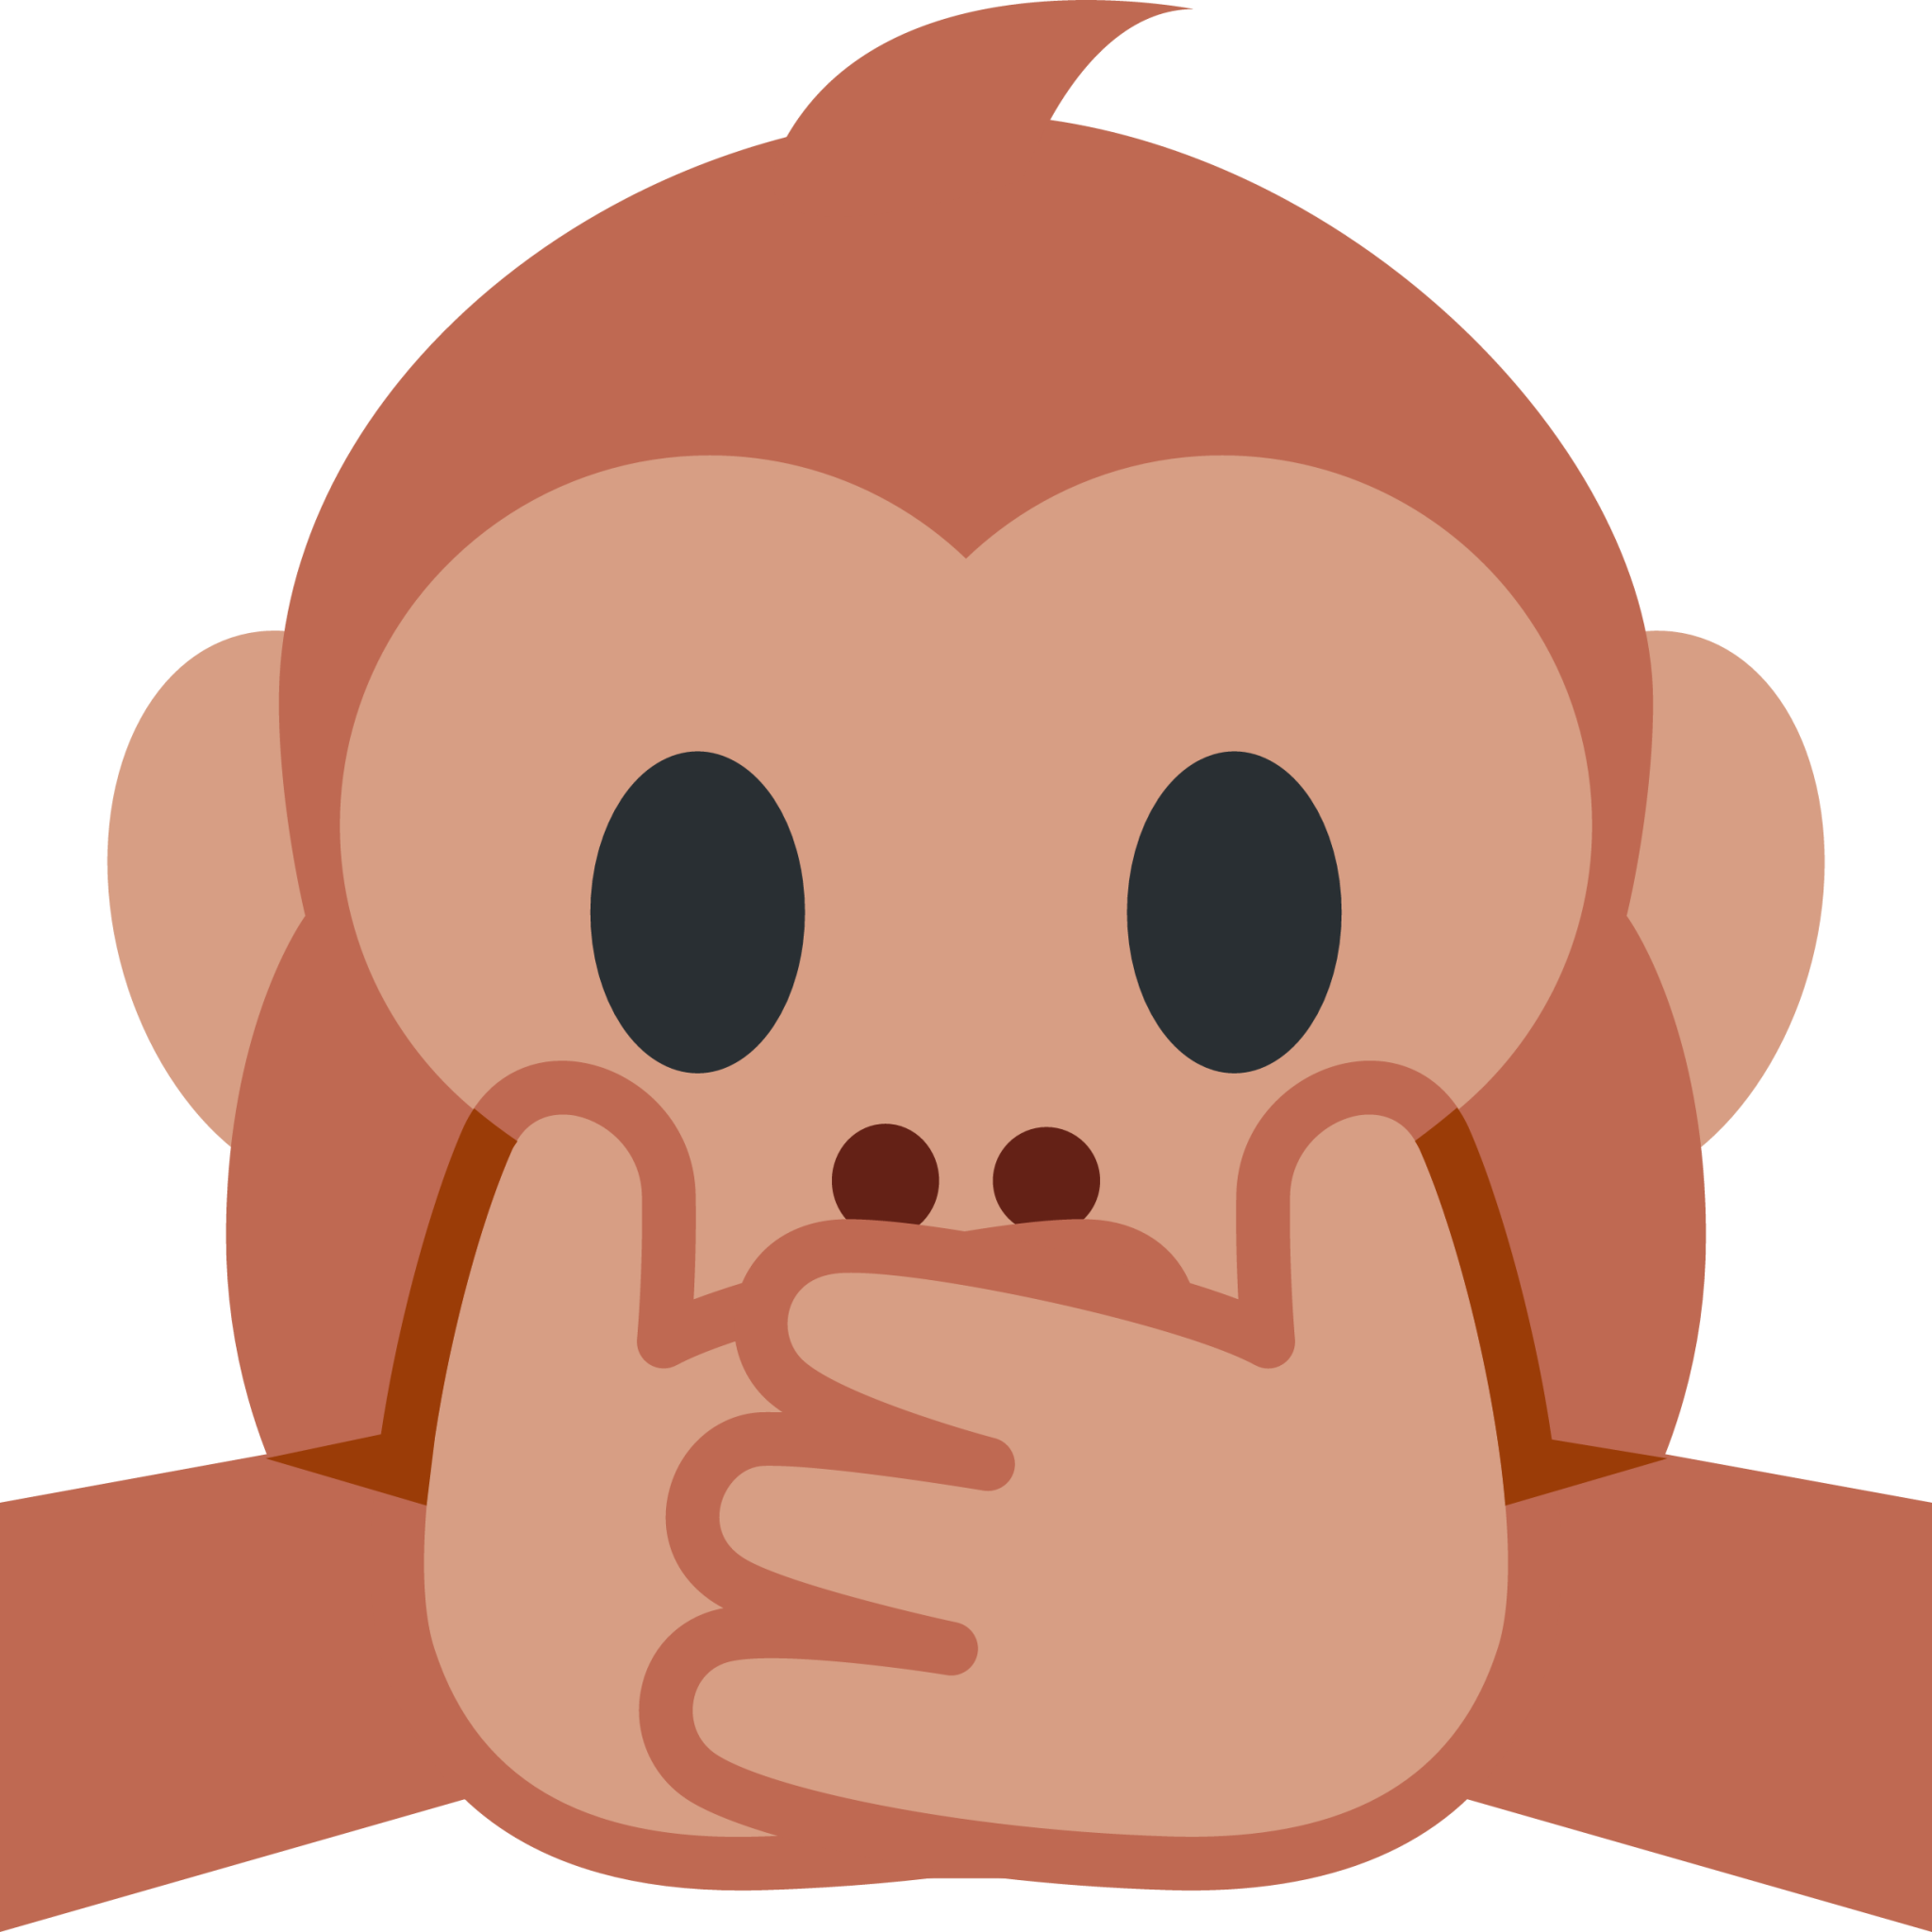 speak-no-evil monkey emoji